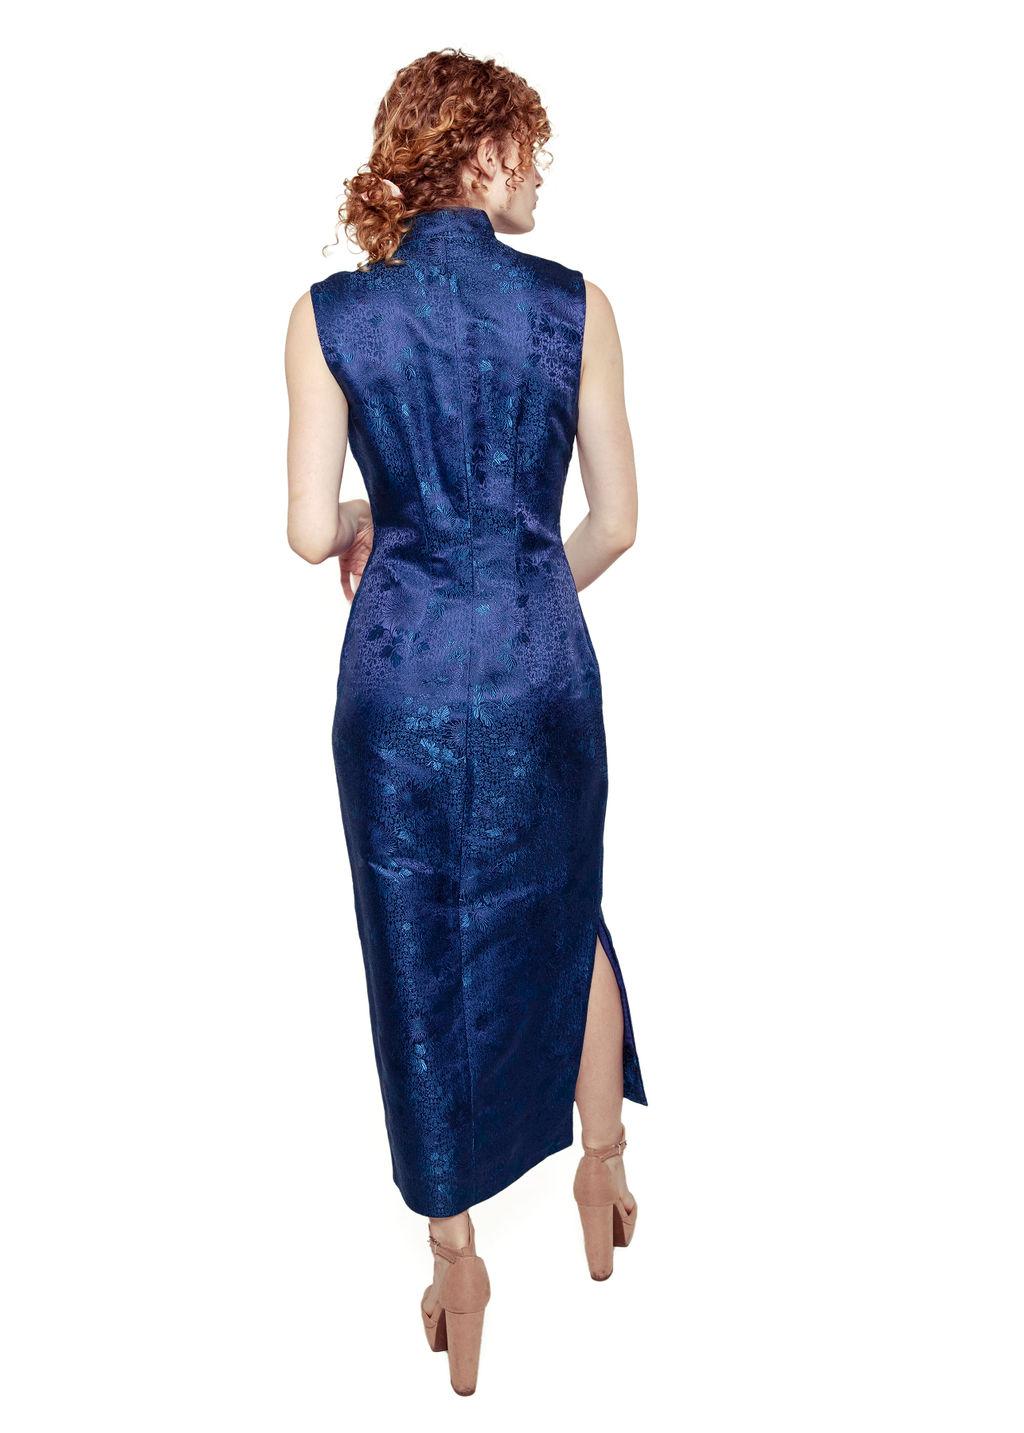 Women's Cheongsam Midnight Blue Dress For Sale